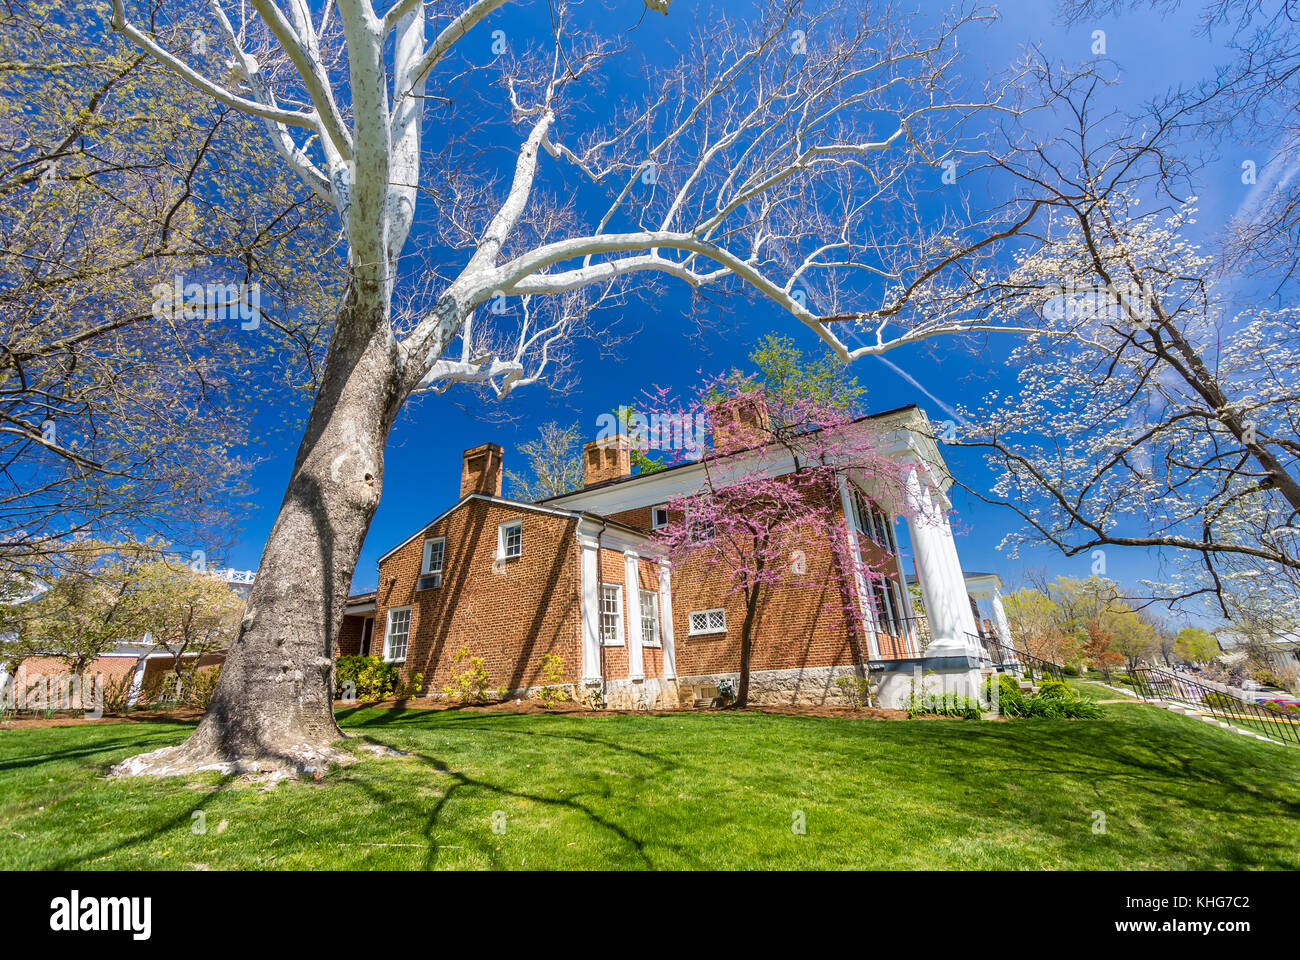 Lee-jackson house à Washington and Lee University à Lexington, en Virginie. Banque D'Images